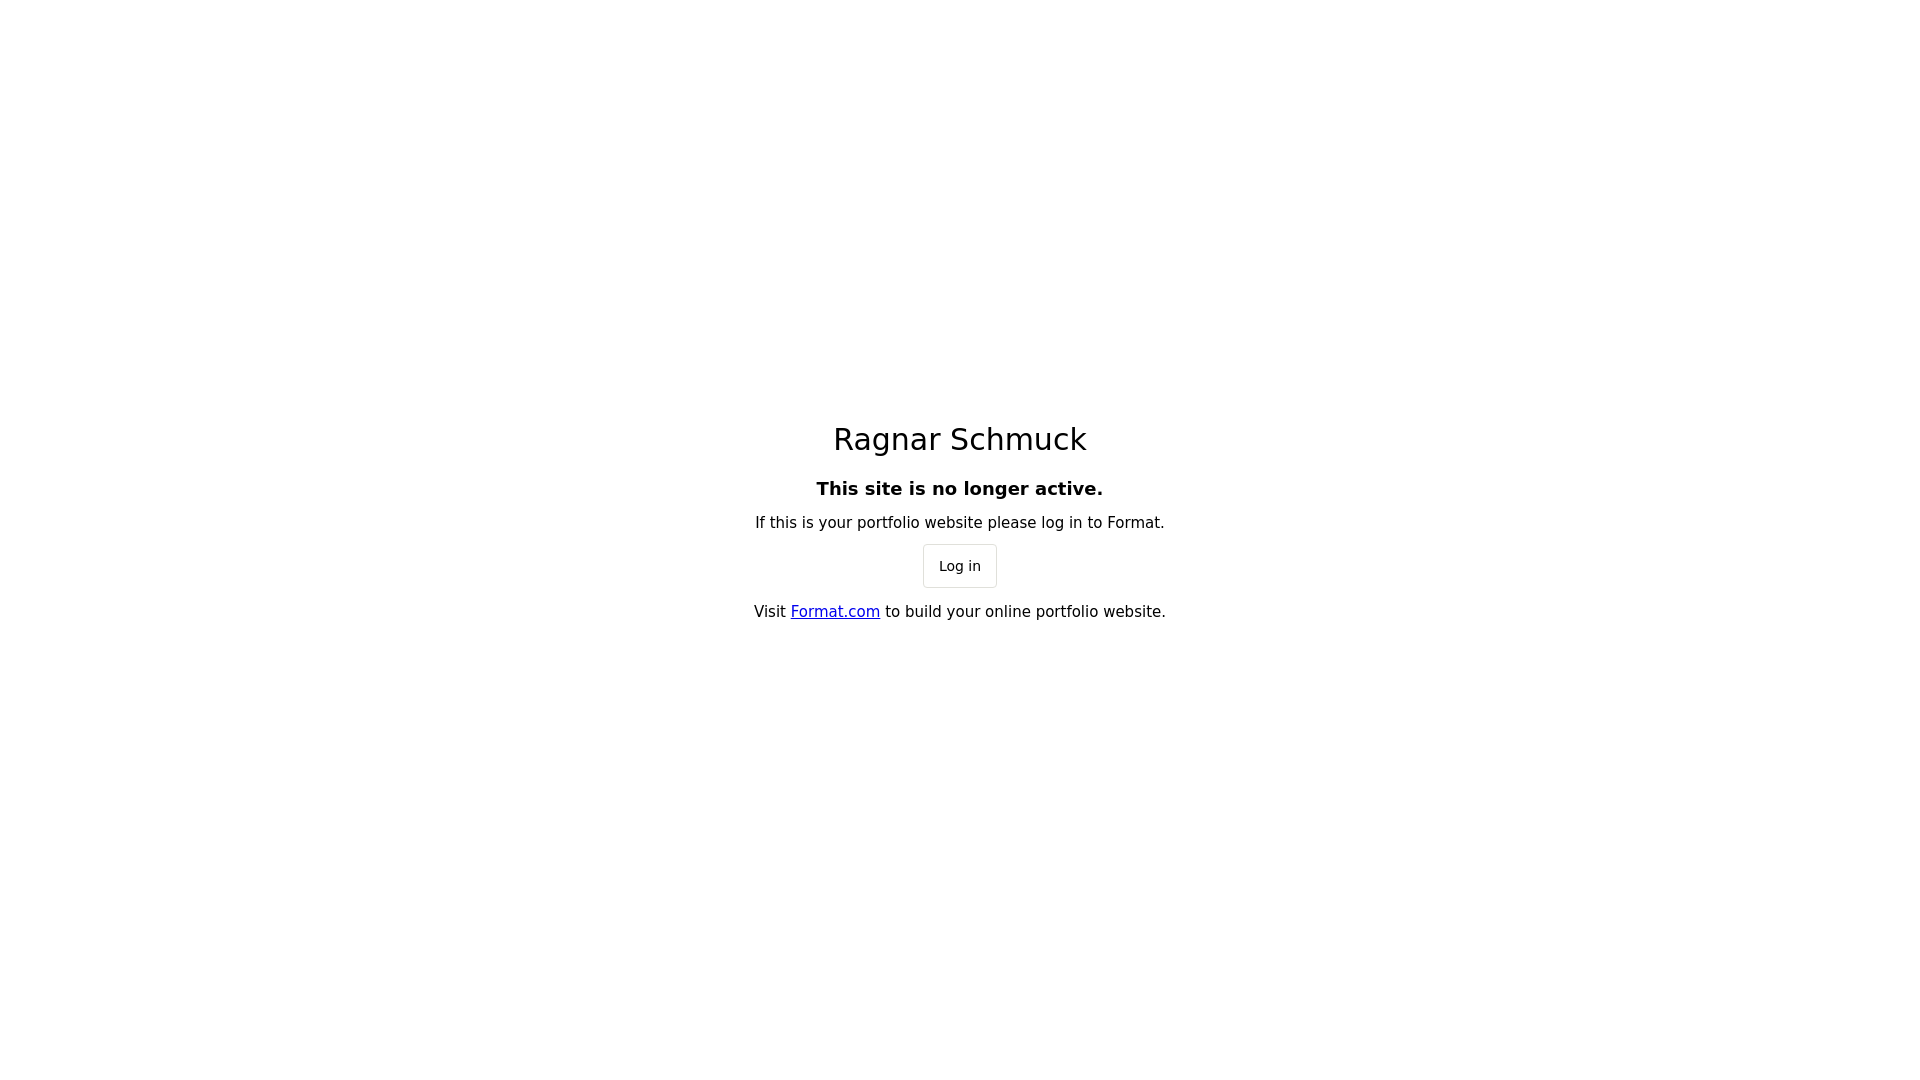 Ragnar Schmuck desktop